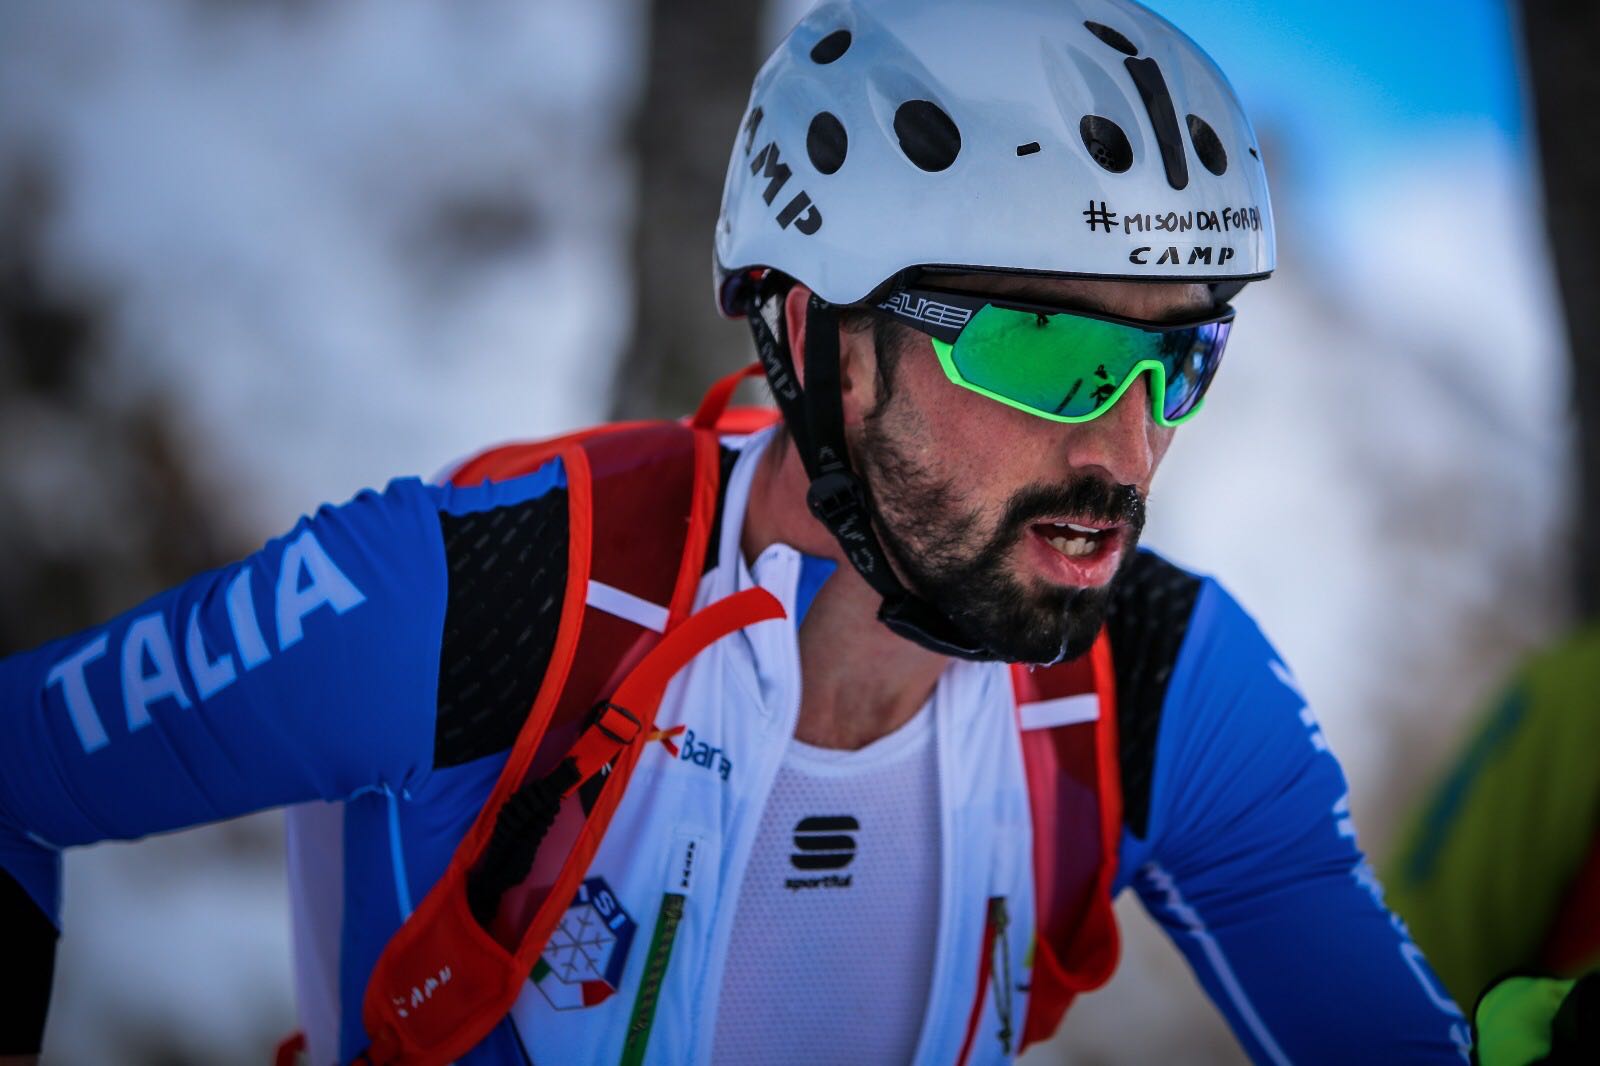 Robert Antonioli - Campione del mondo in carica di Sci alpinismo